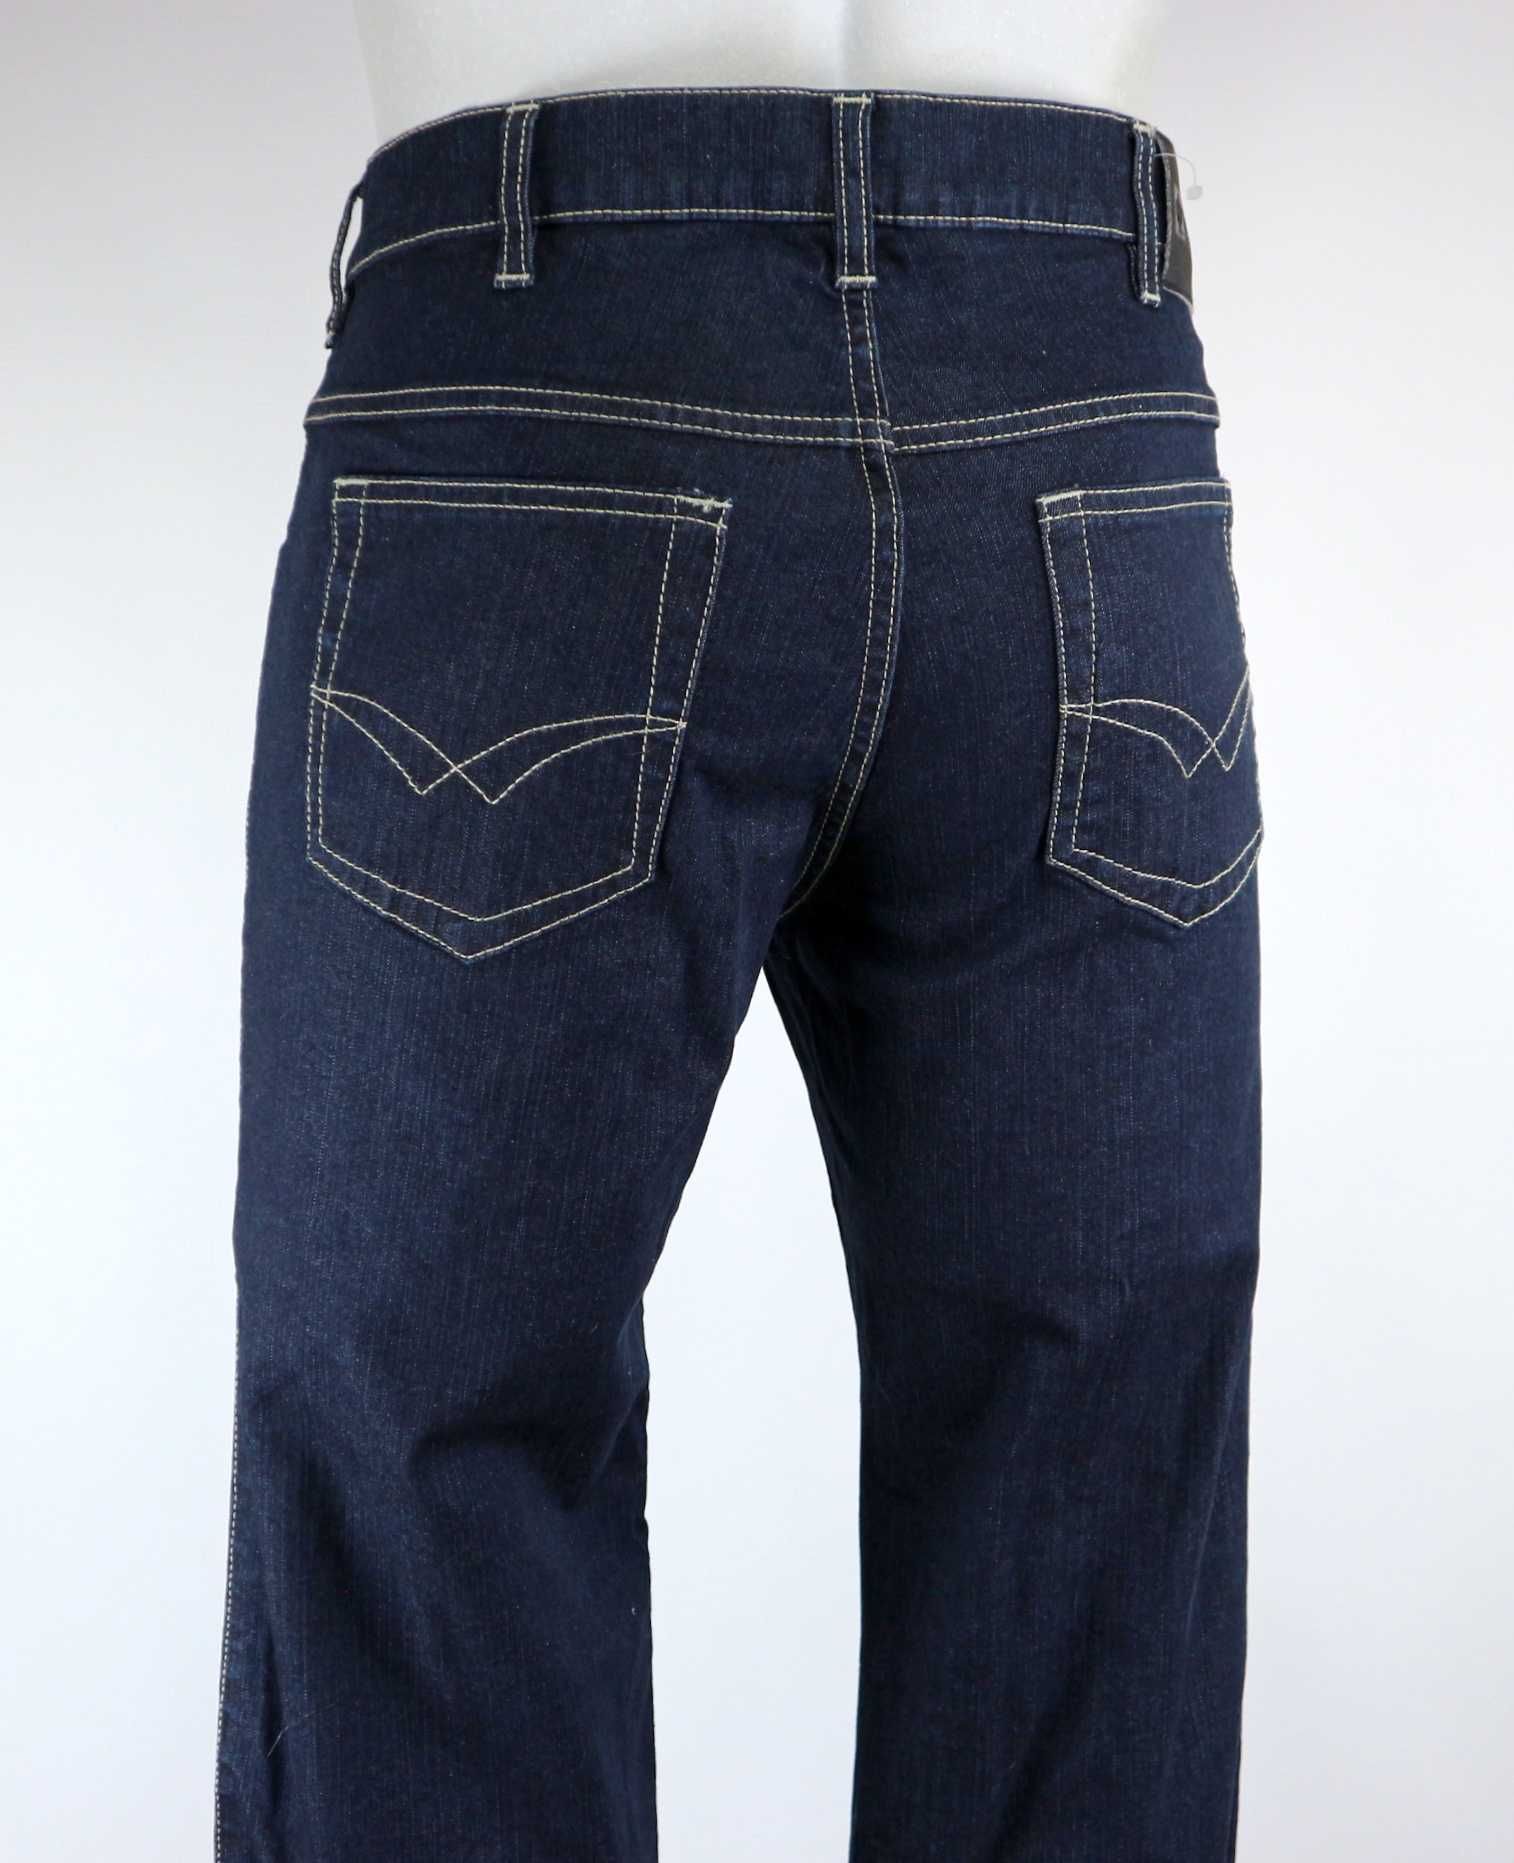 Engelbert Strauss 5-pockets spodnie jeansy robocze W32 L32 (48)